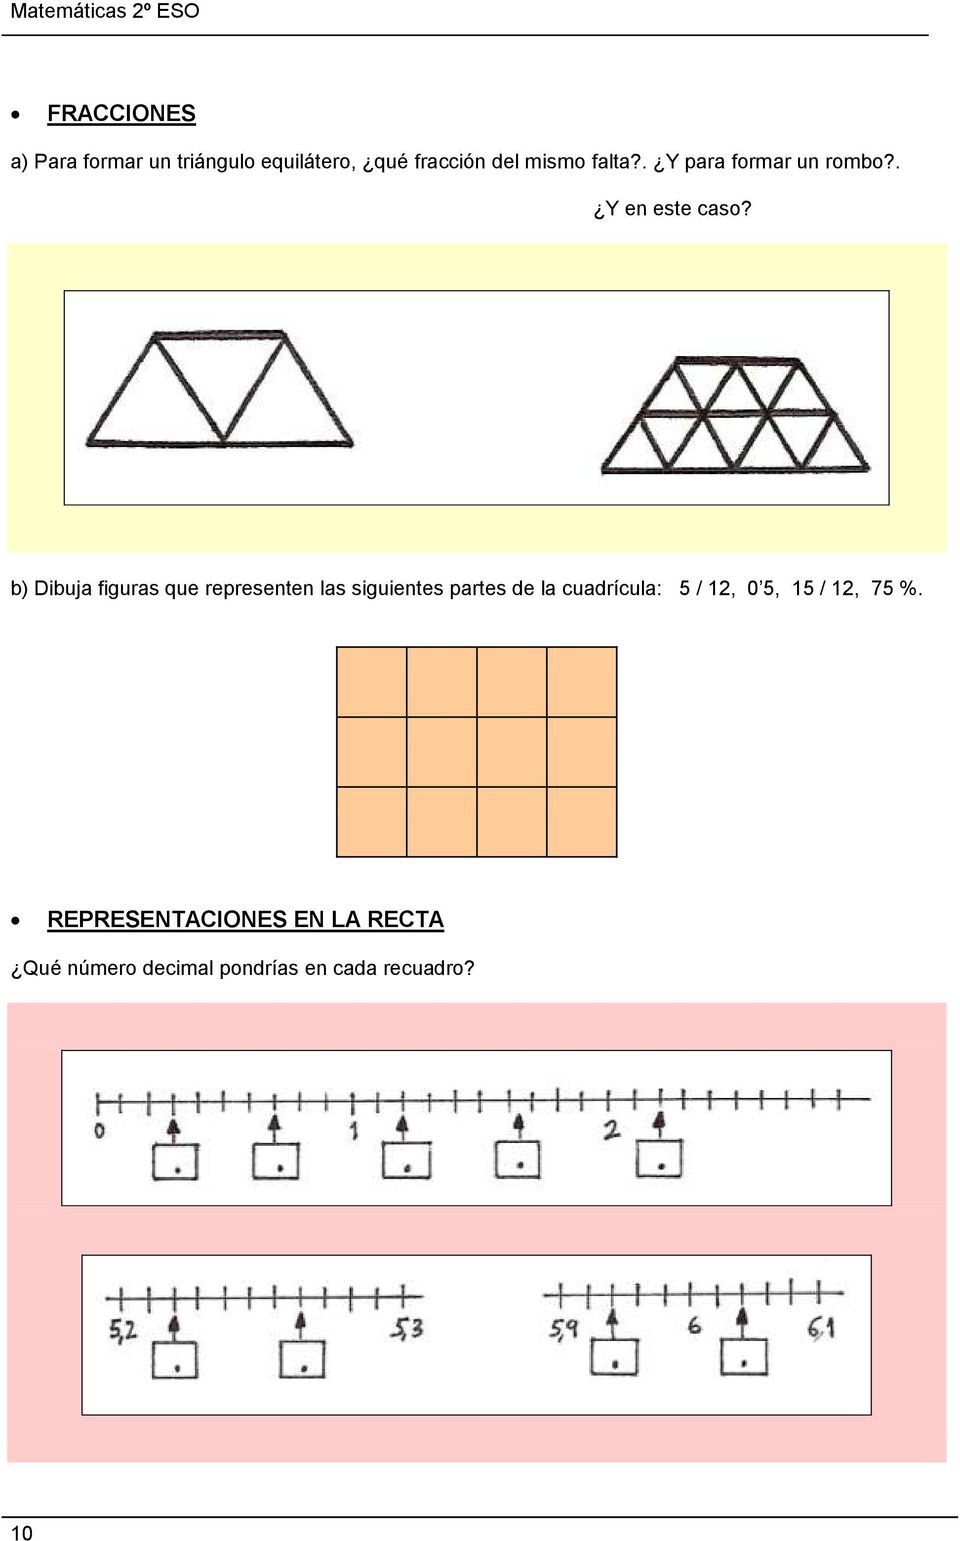 b) Dibuja figuras que representen las siguientes partes de la cuadrícula: 5 /